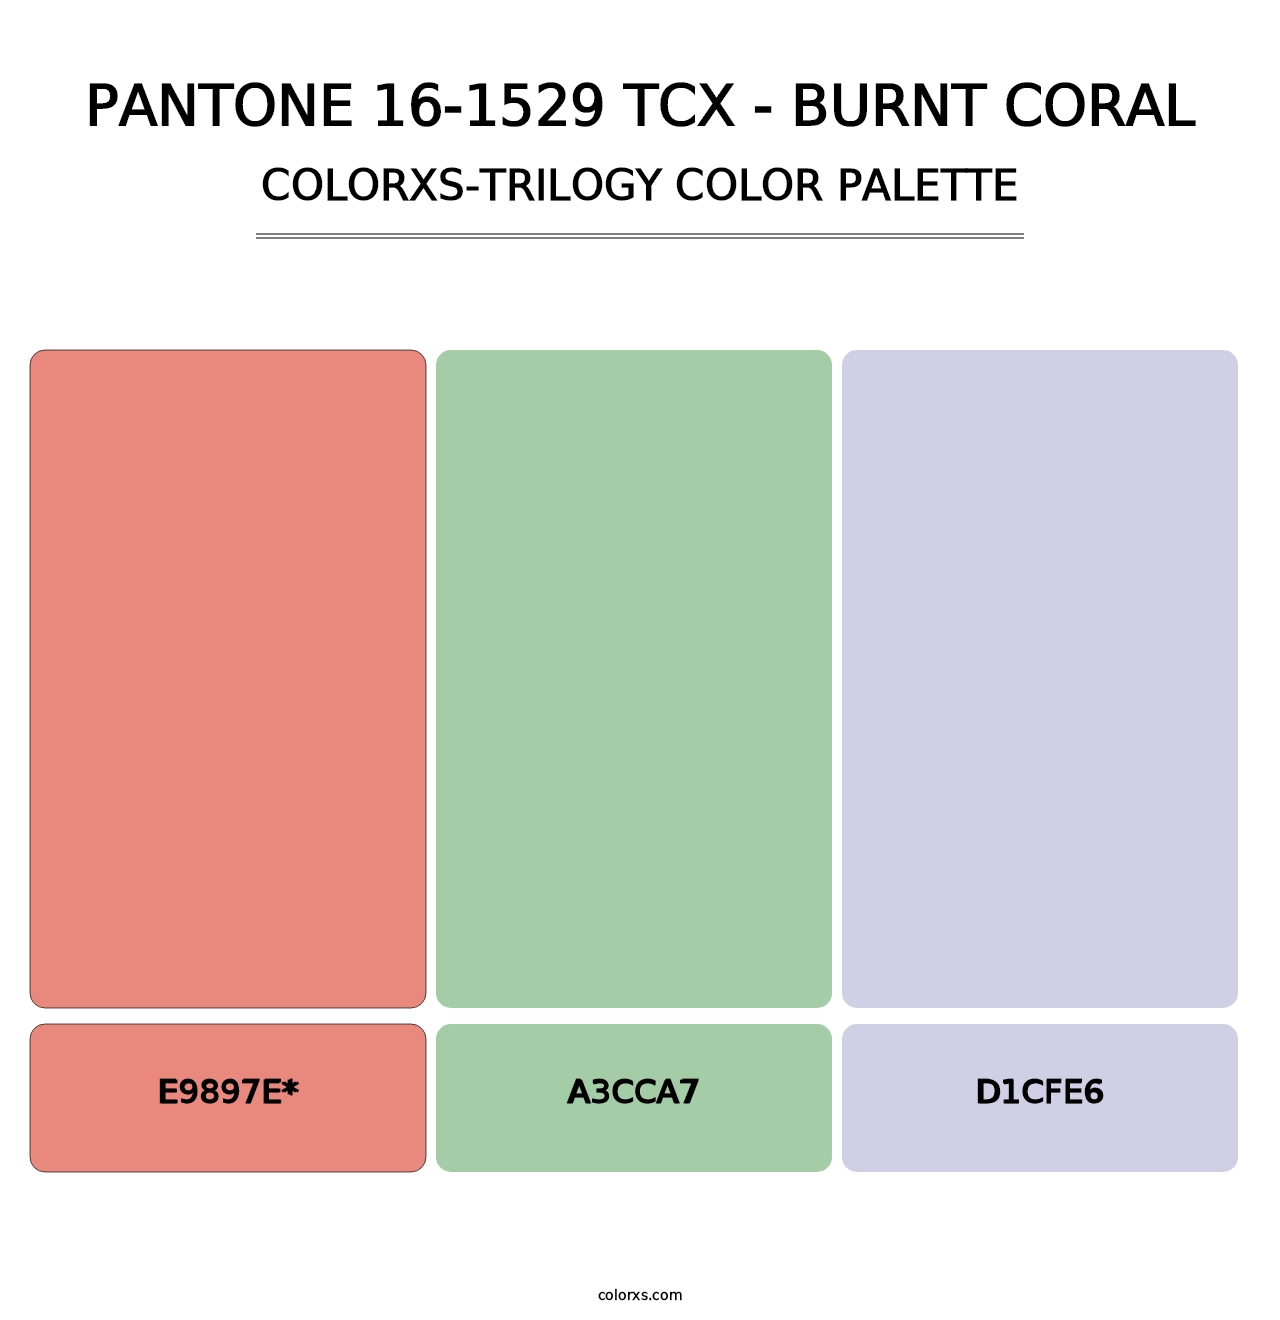 PANTONE 16-1529 TCX - Burnt Coral - Colorxs Trilogy Palette